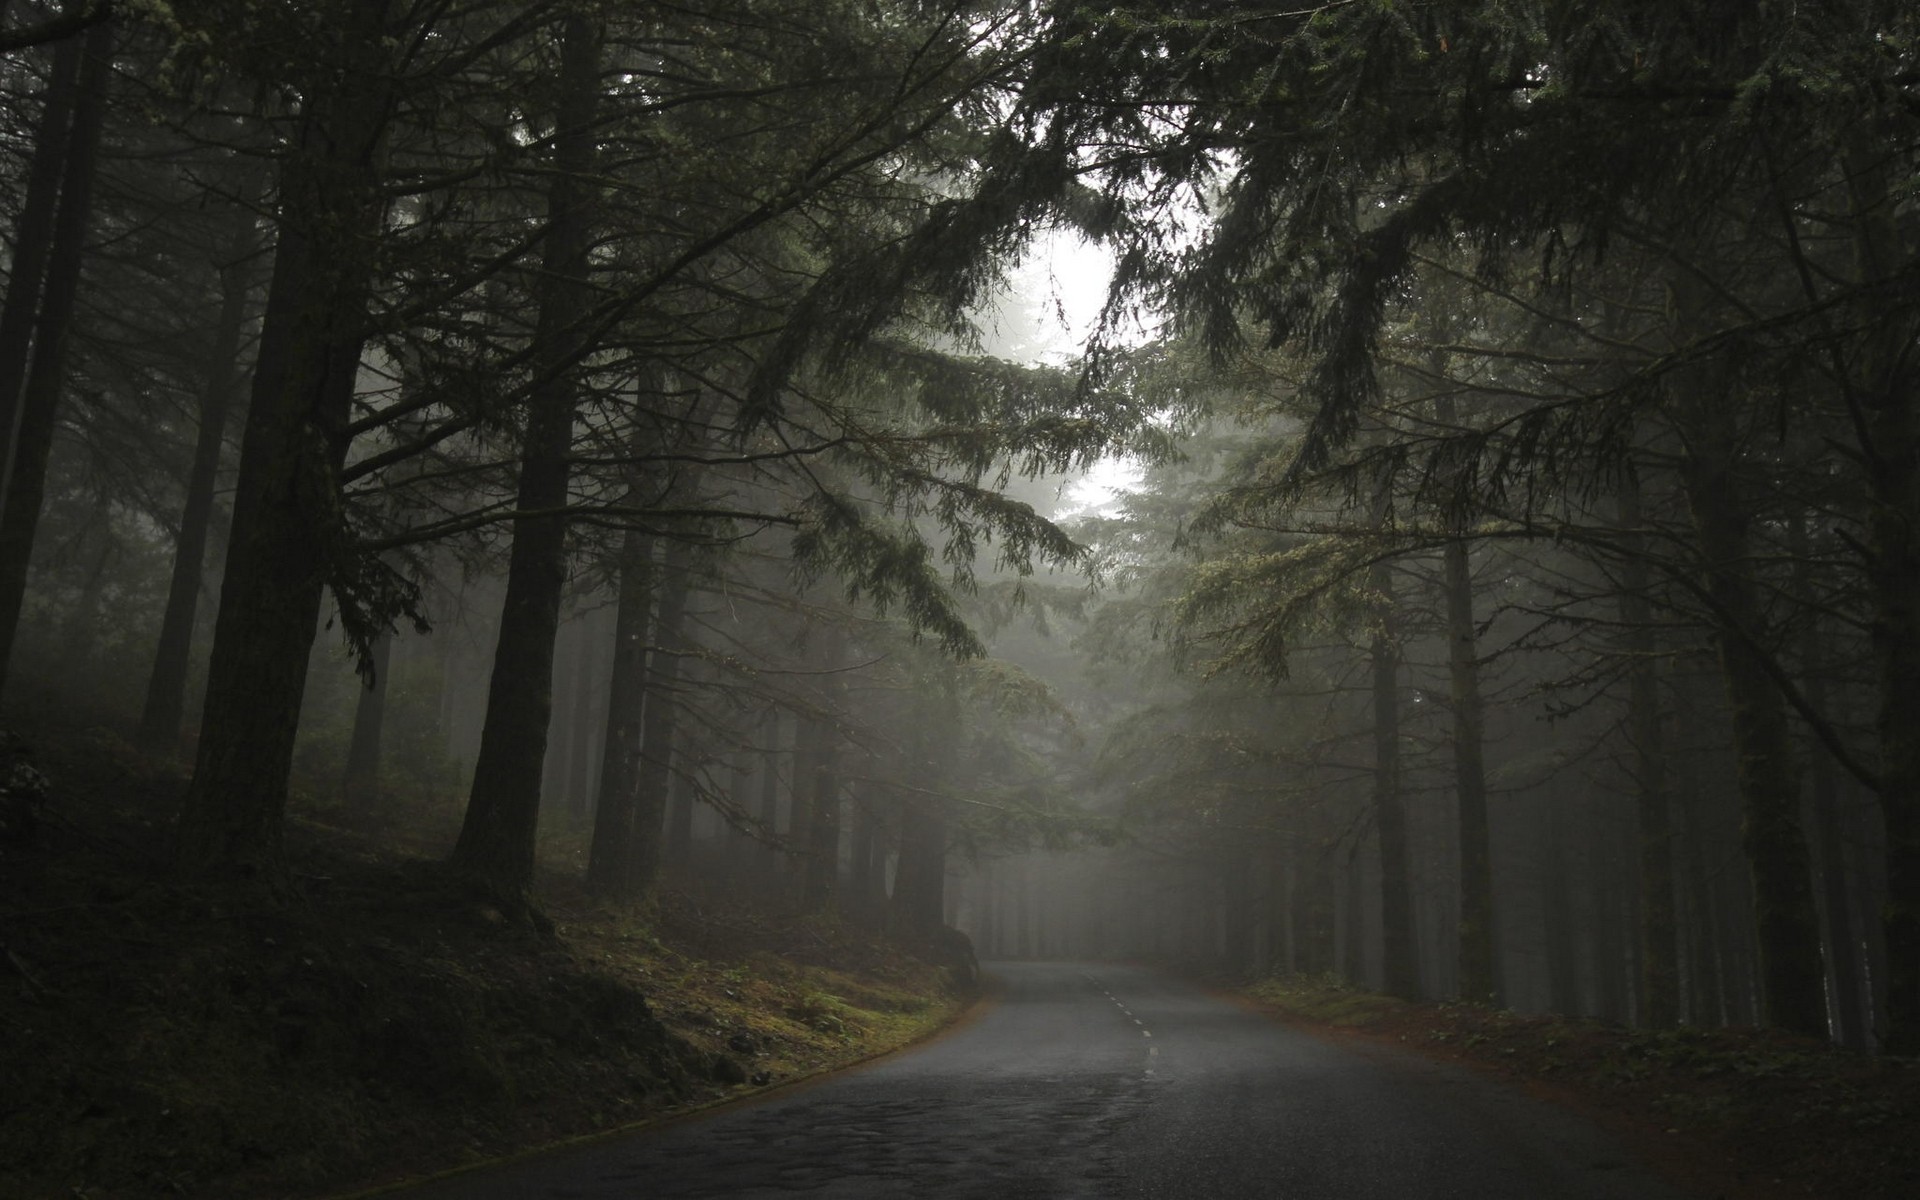 General 1920x1200 nature landscape mist forest road hills morning trees dark asphalt outdoors low light